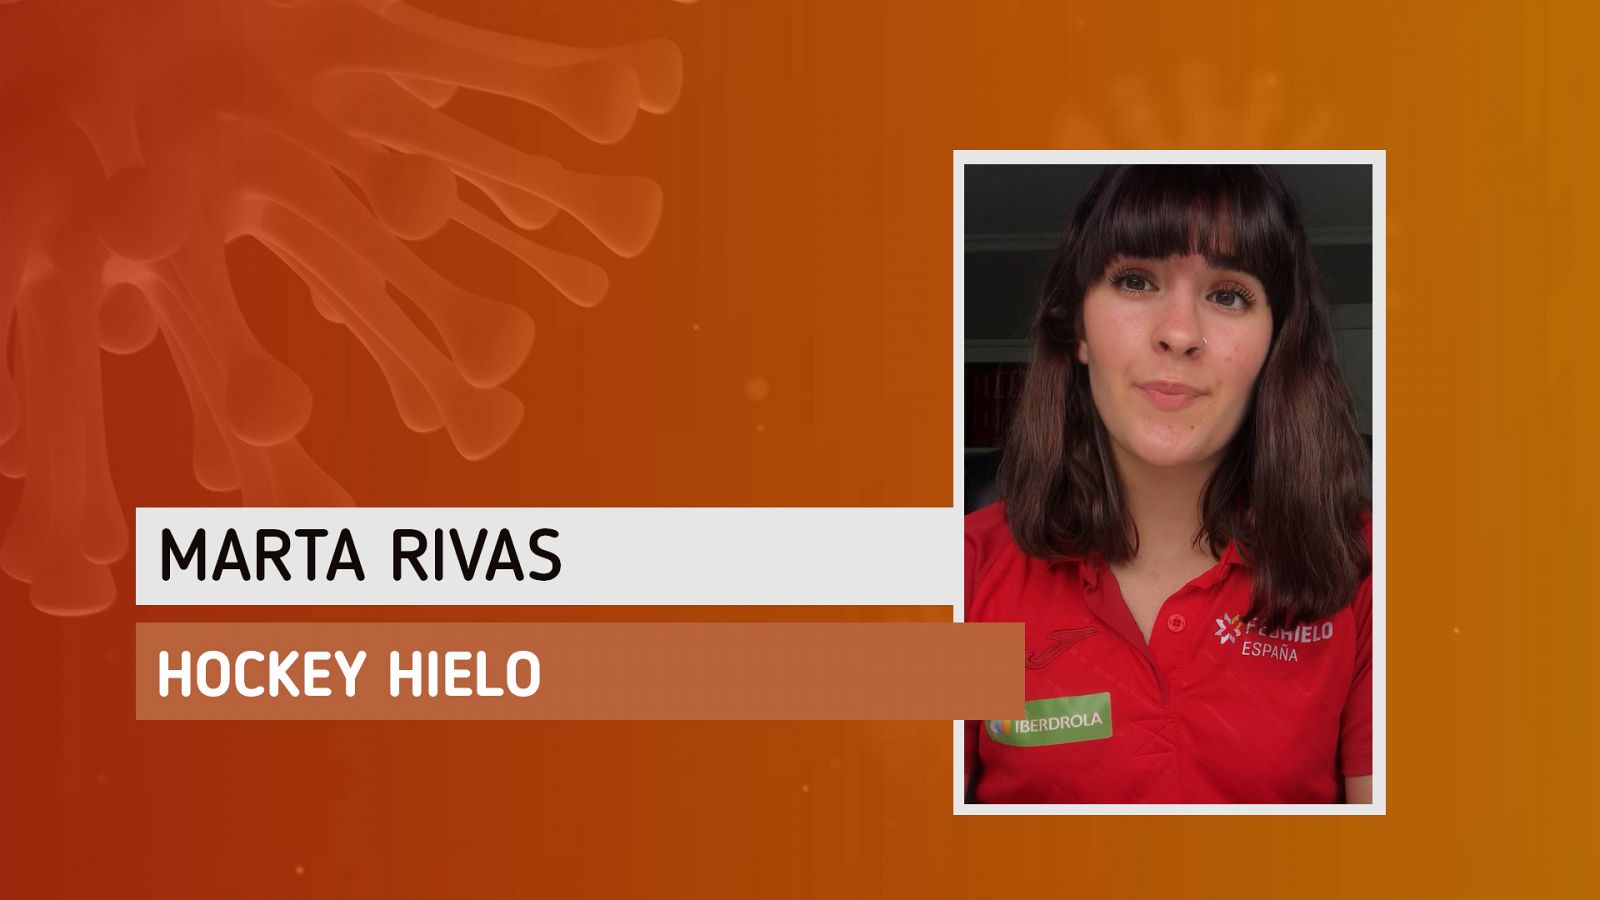 Deportistas ante el coronavirus | Marta Rivas: "Espero que la solidaridad continúe"